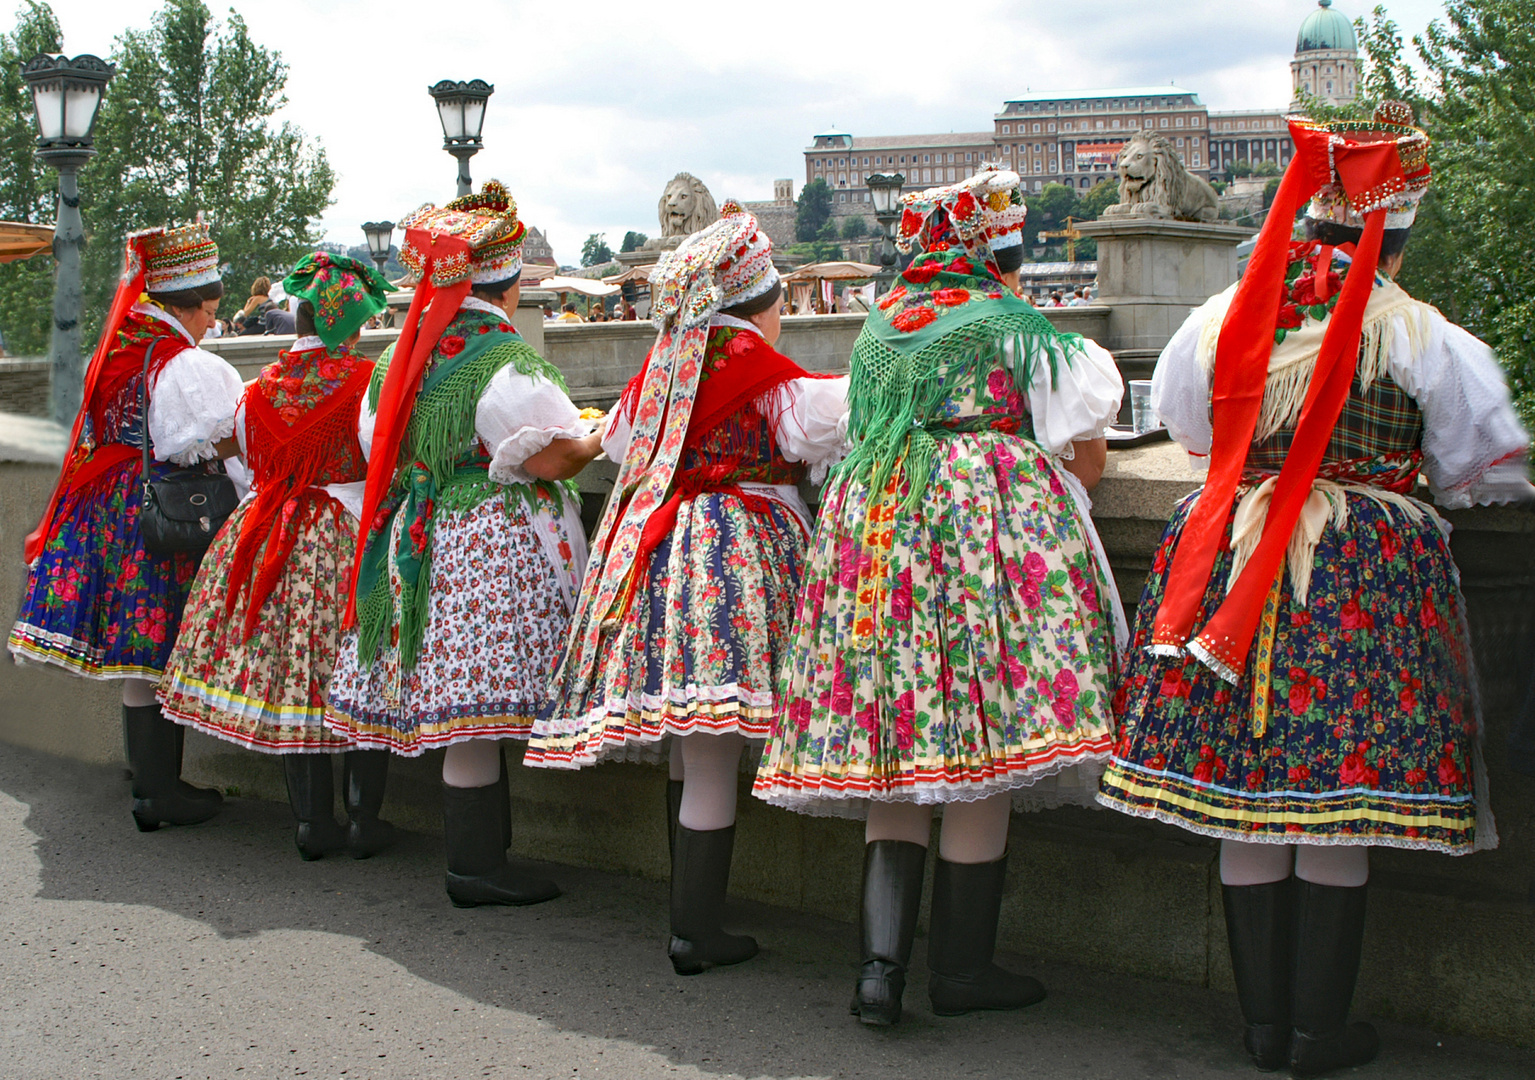 Mittagspause einer Folkloregruppe in Budapest